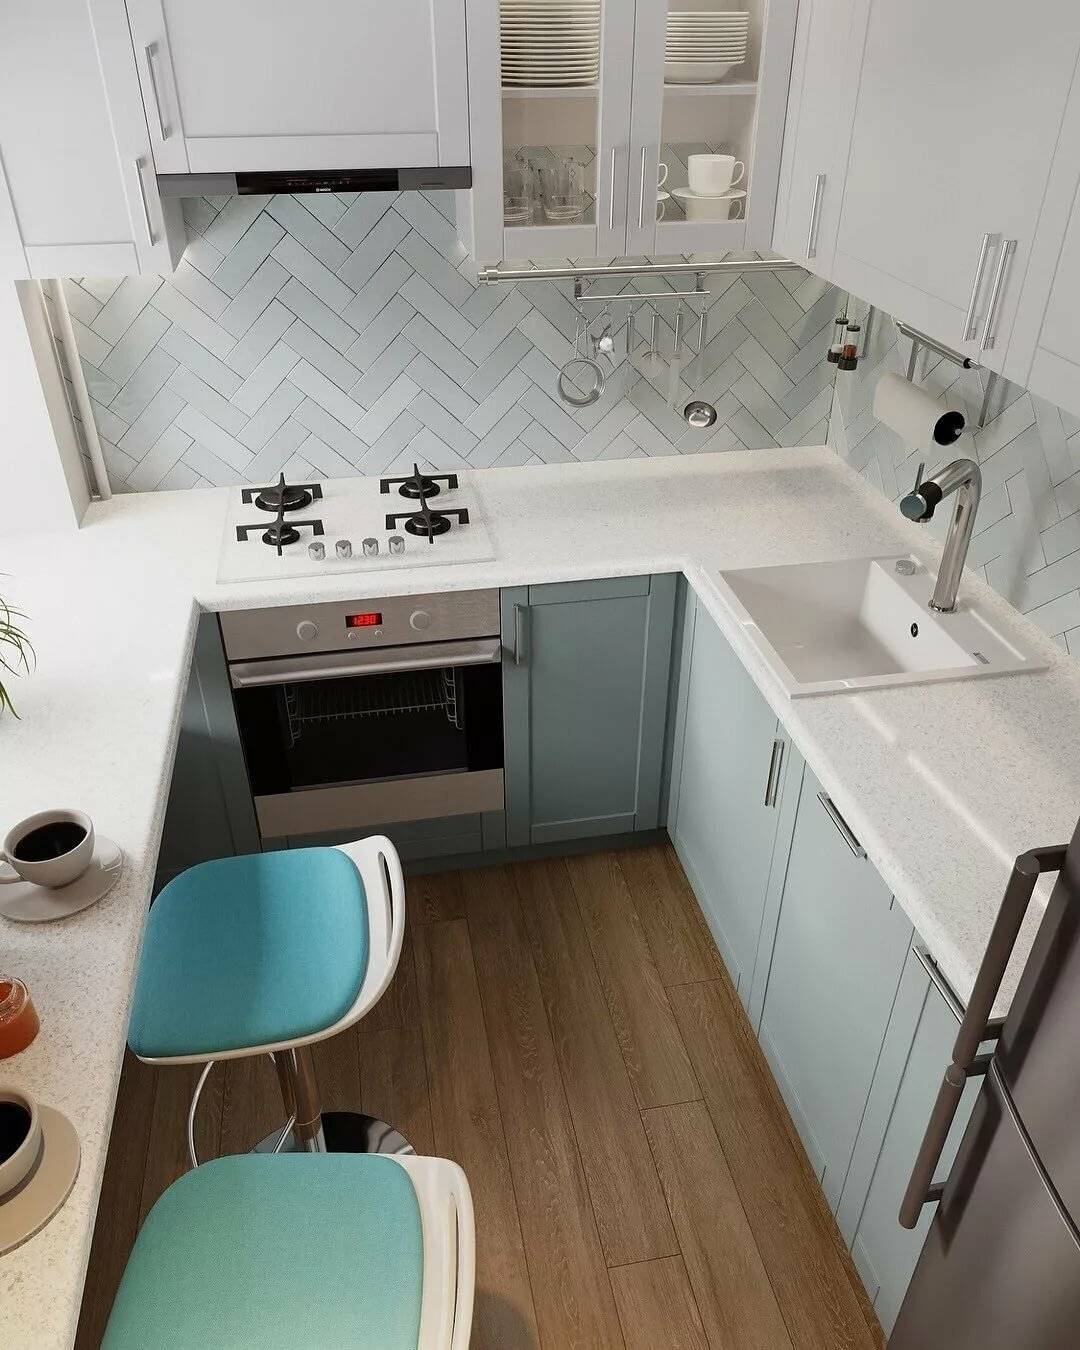 Дизайн кухни 7 кв.м. (80 фото) - интерьеры после ремонта, красивые идеи отделки маленькой кухни